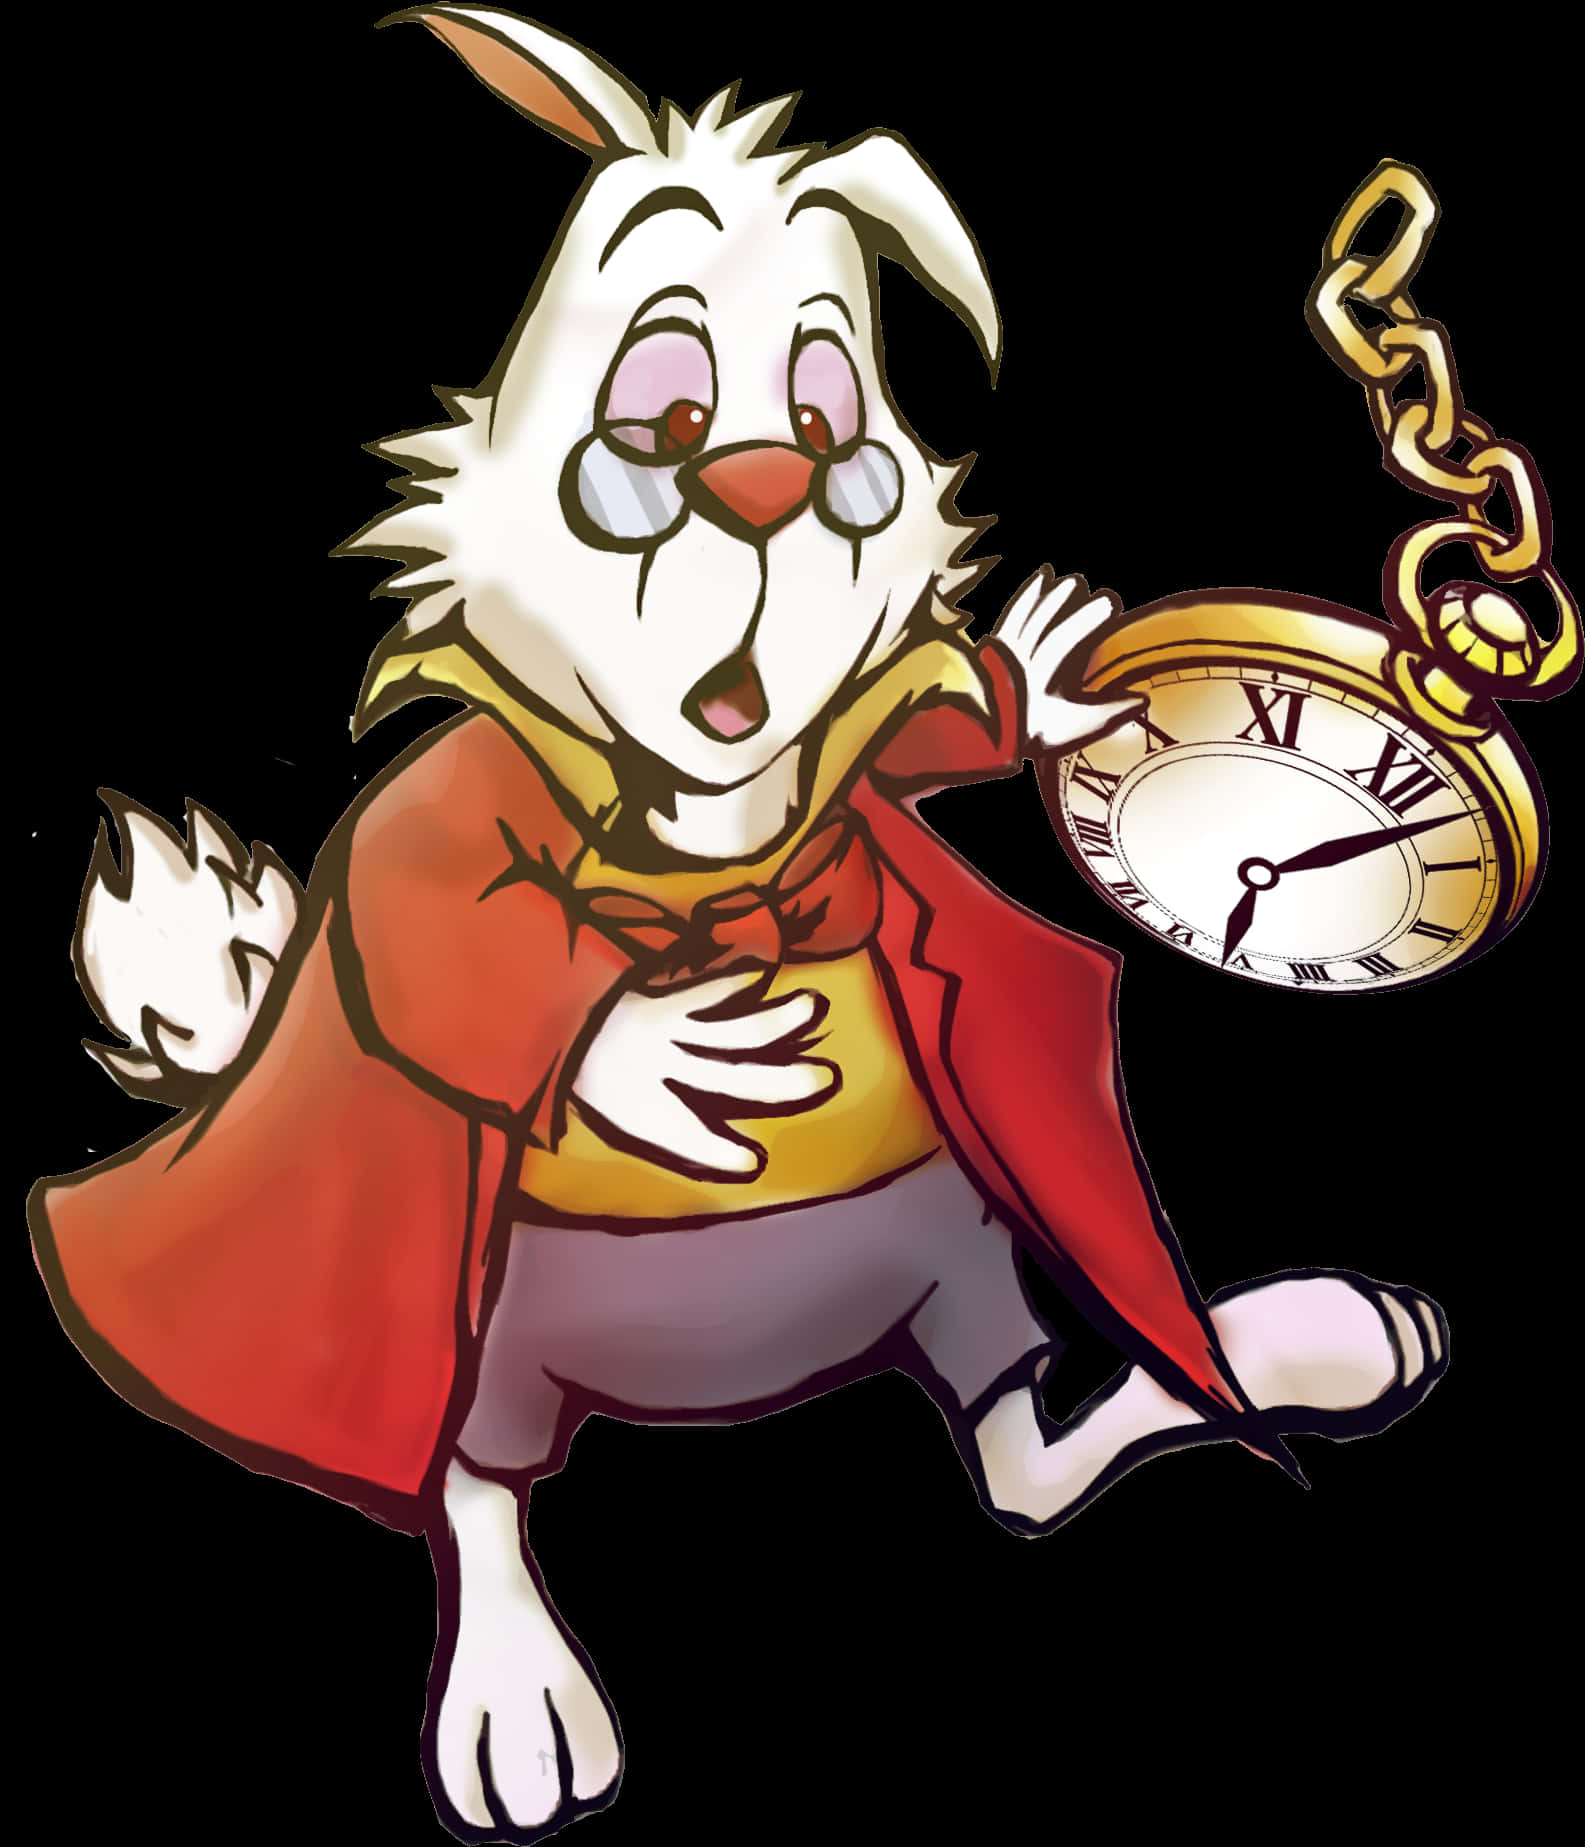 A Cartoon Of A Rabbit Holding A Pocket Watch